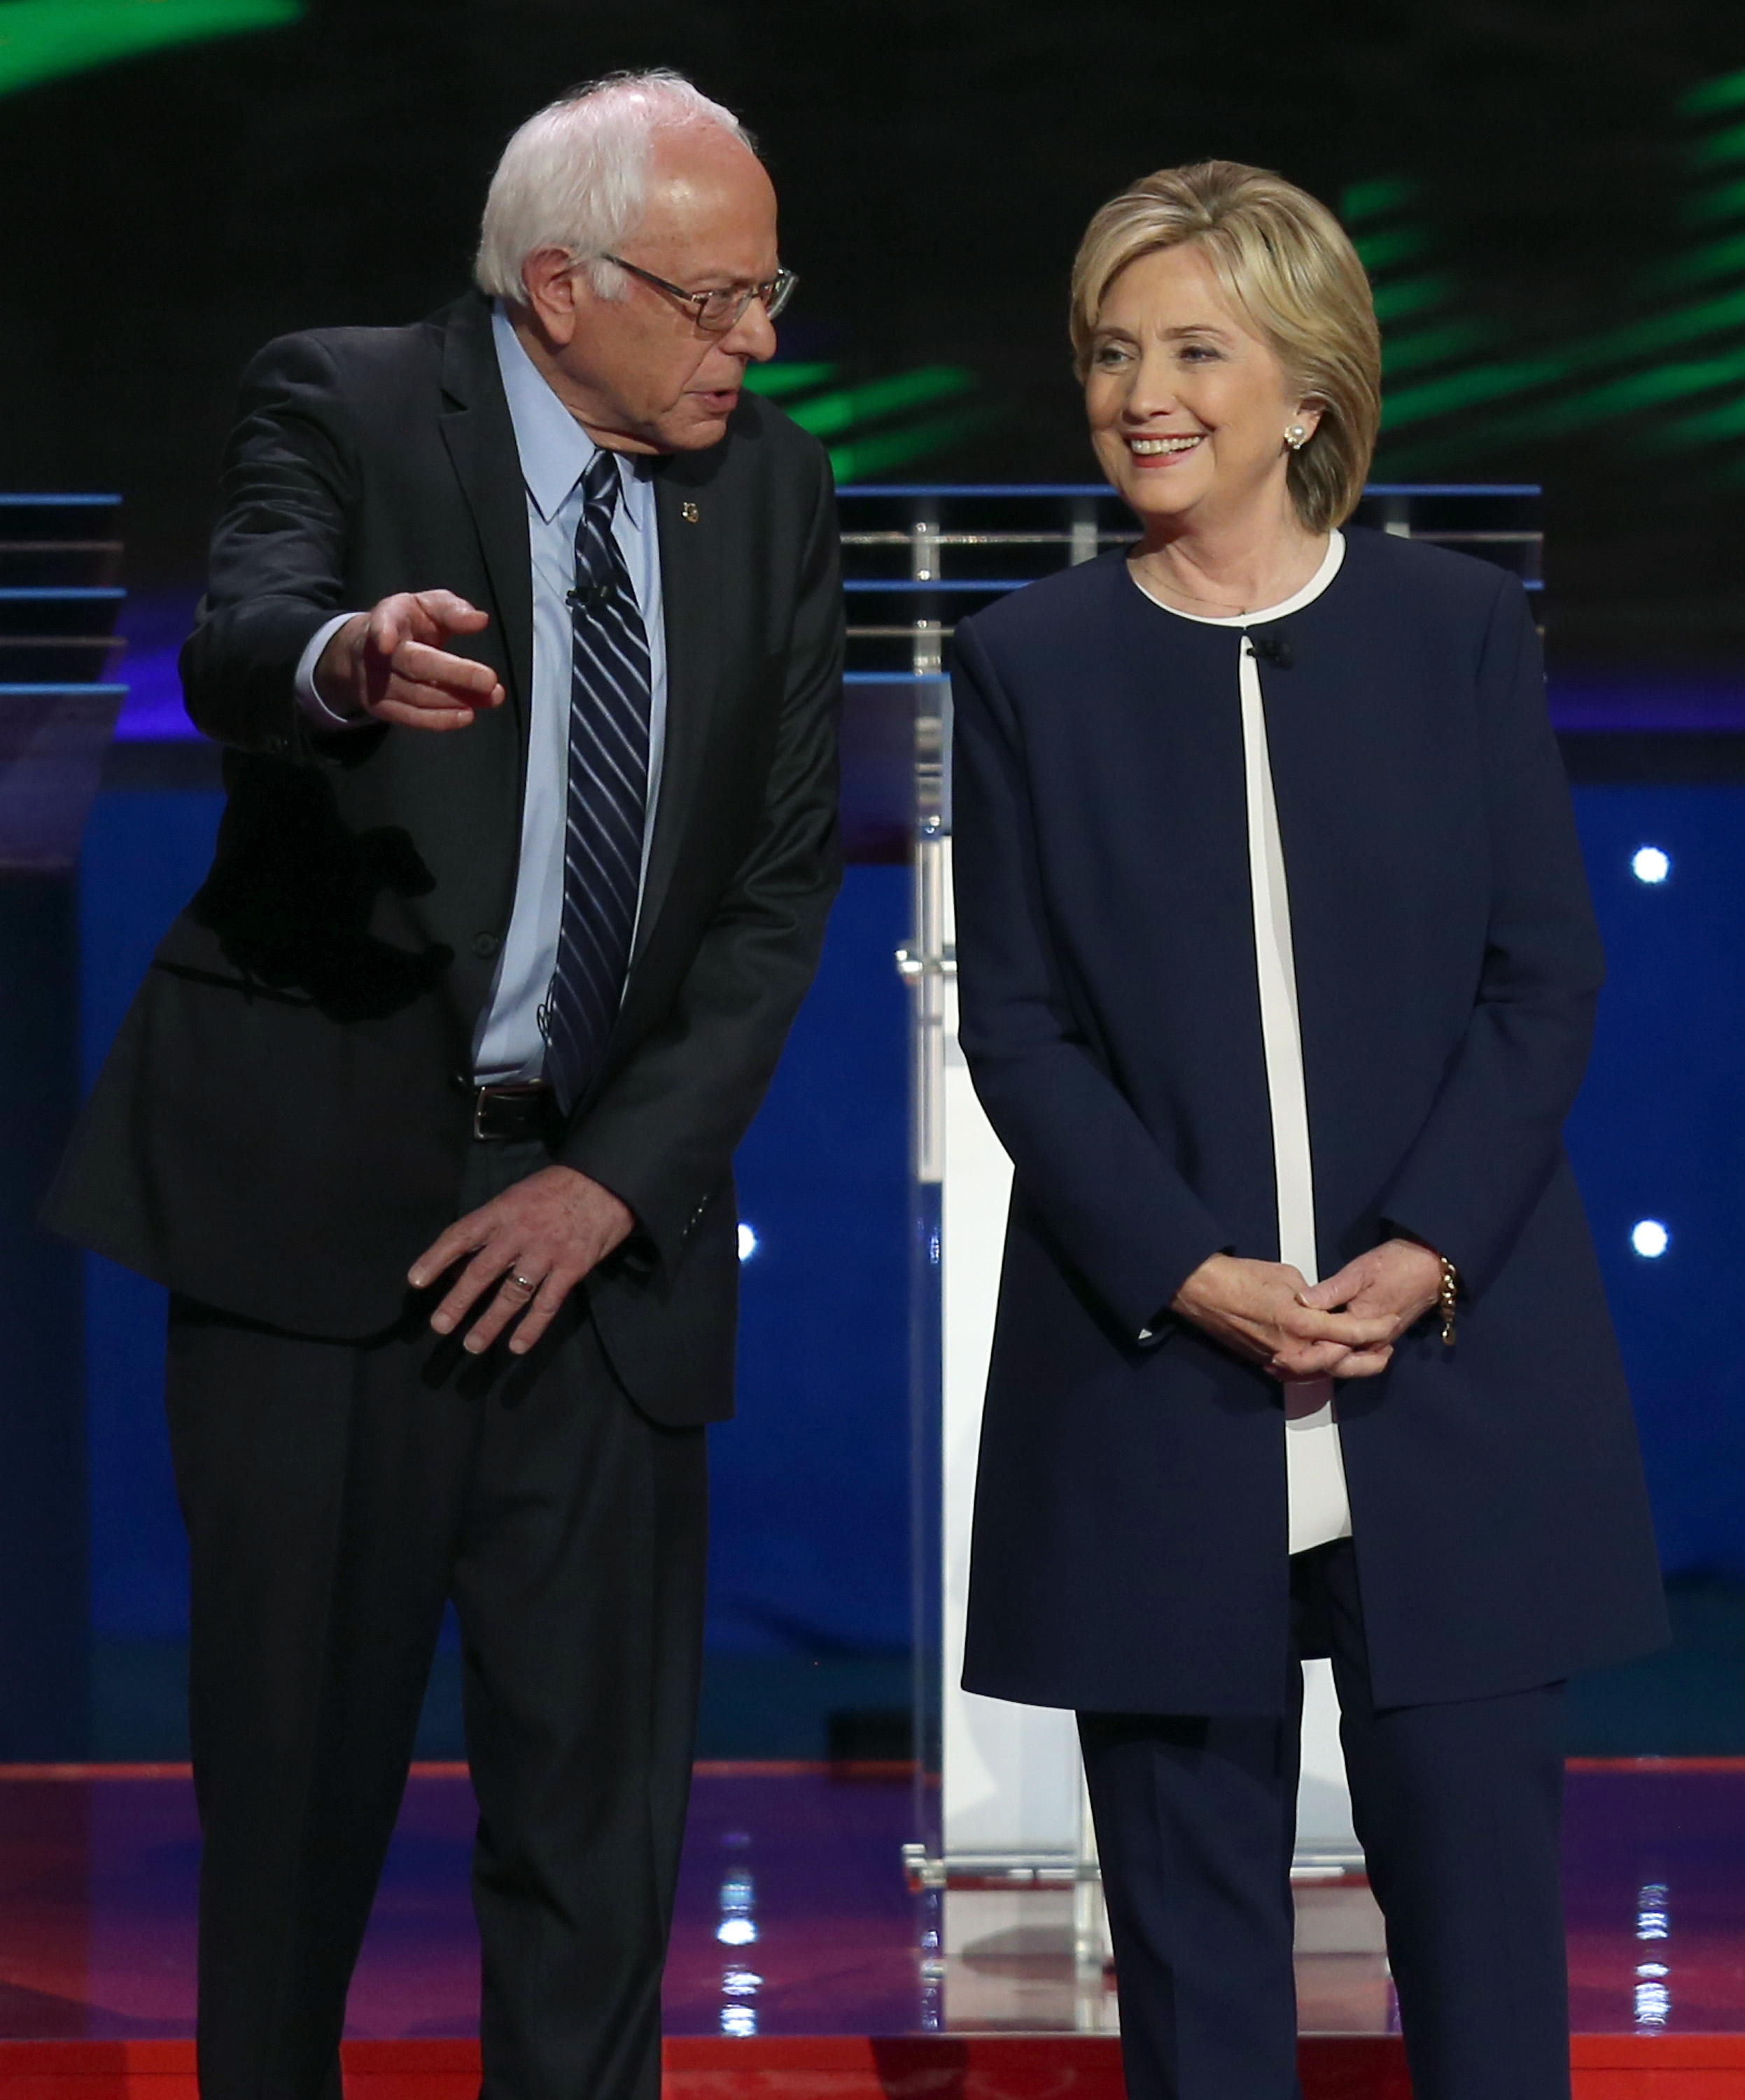 Bernie Sanders and Hillary Clinton